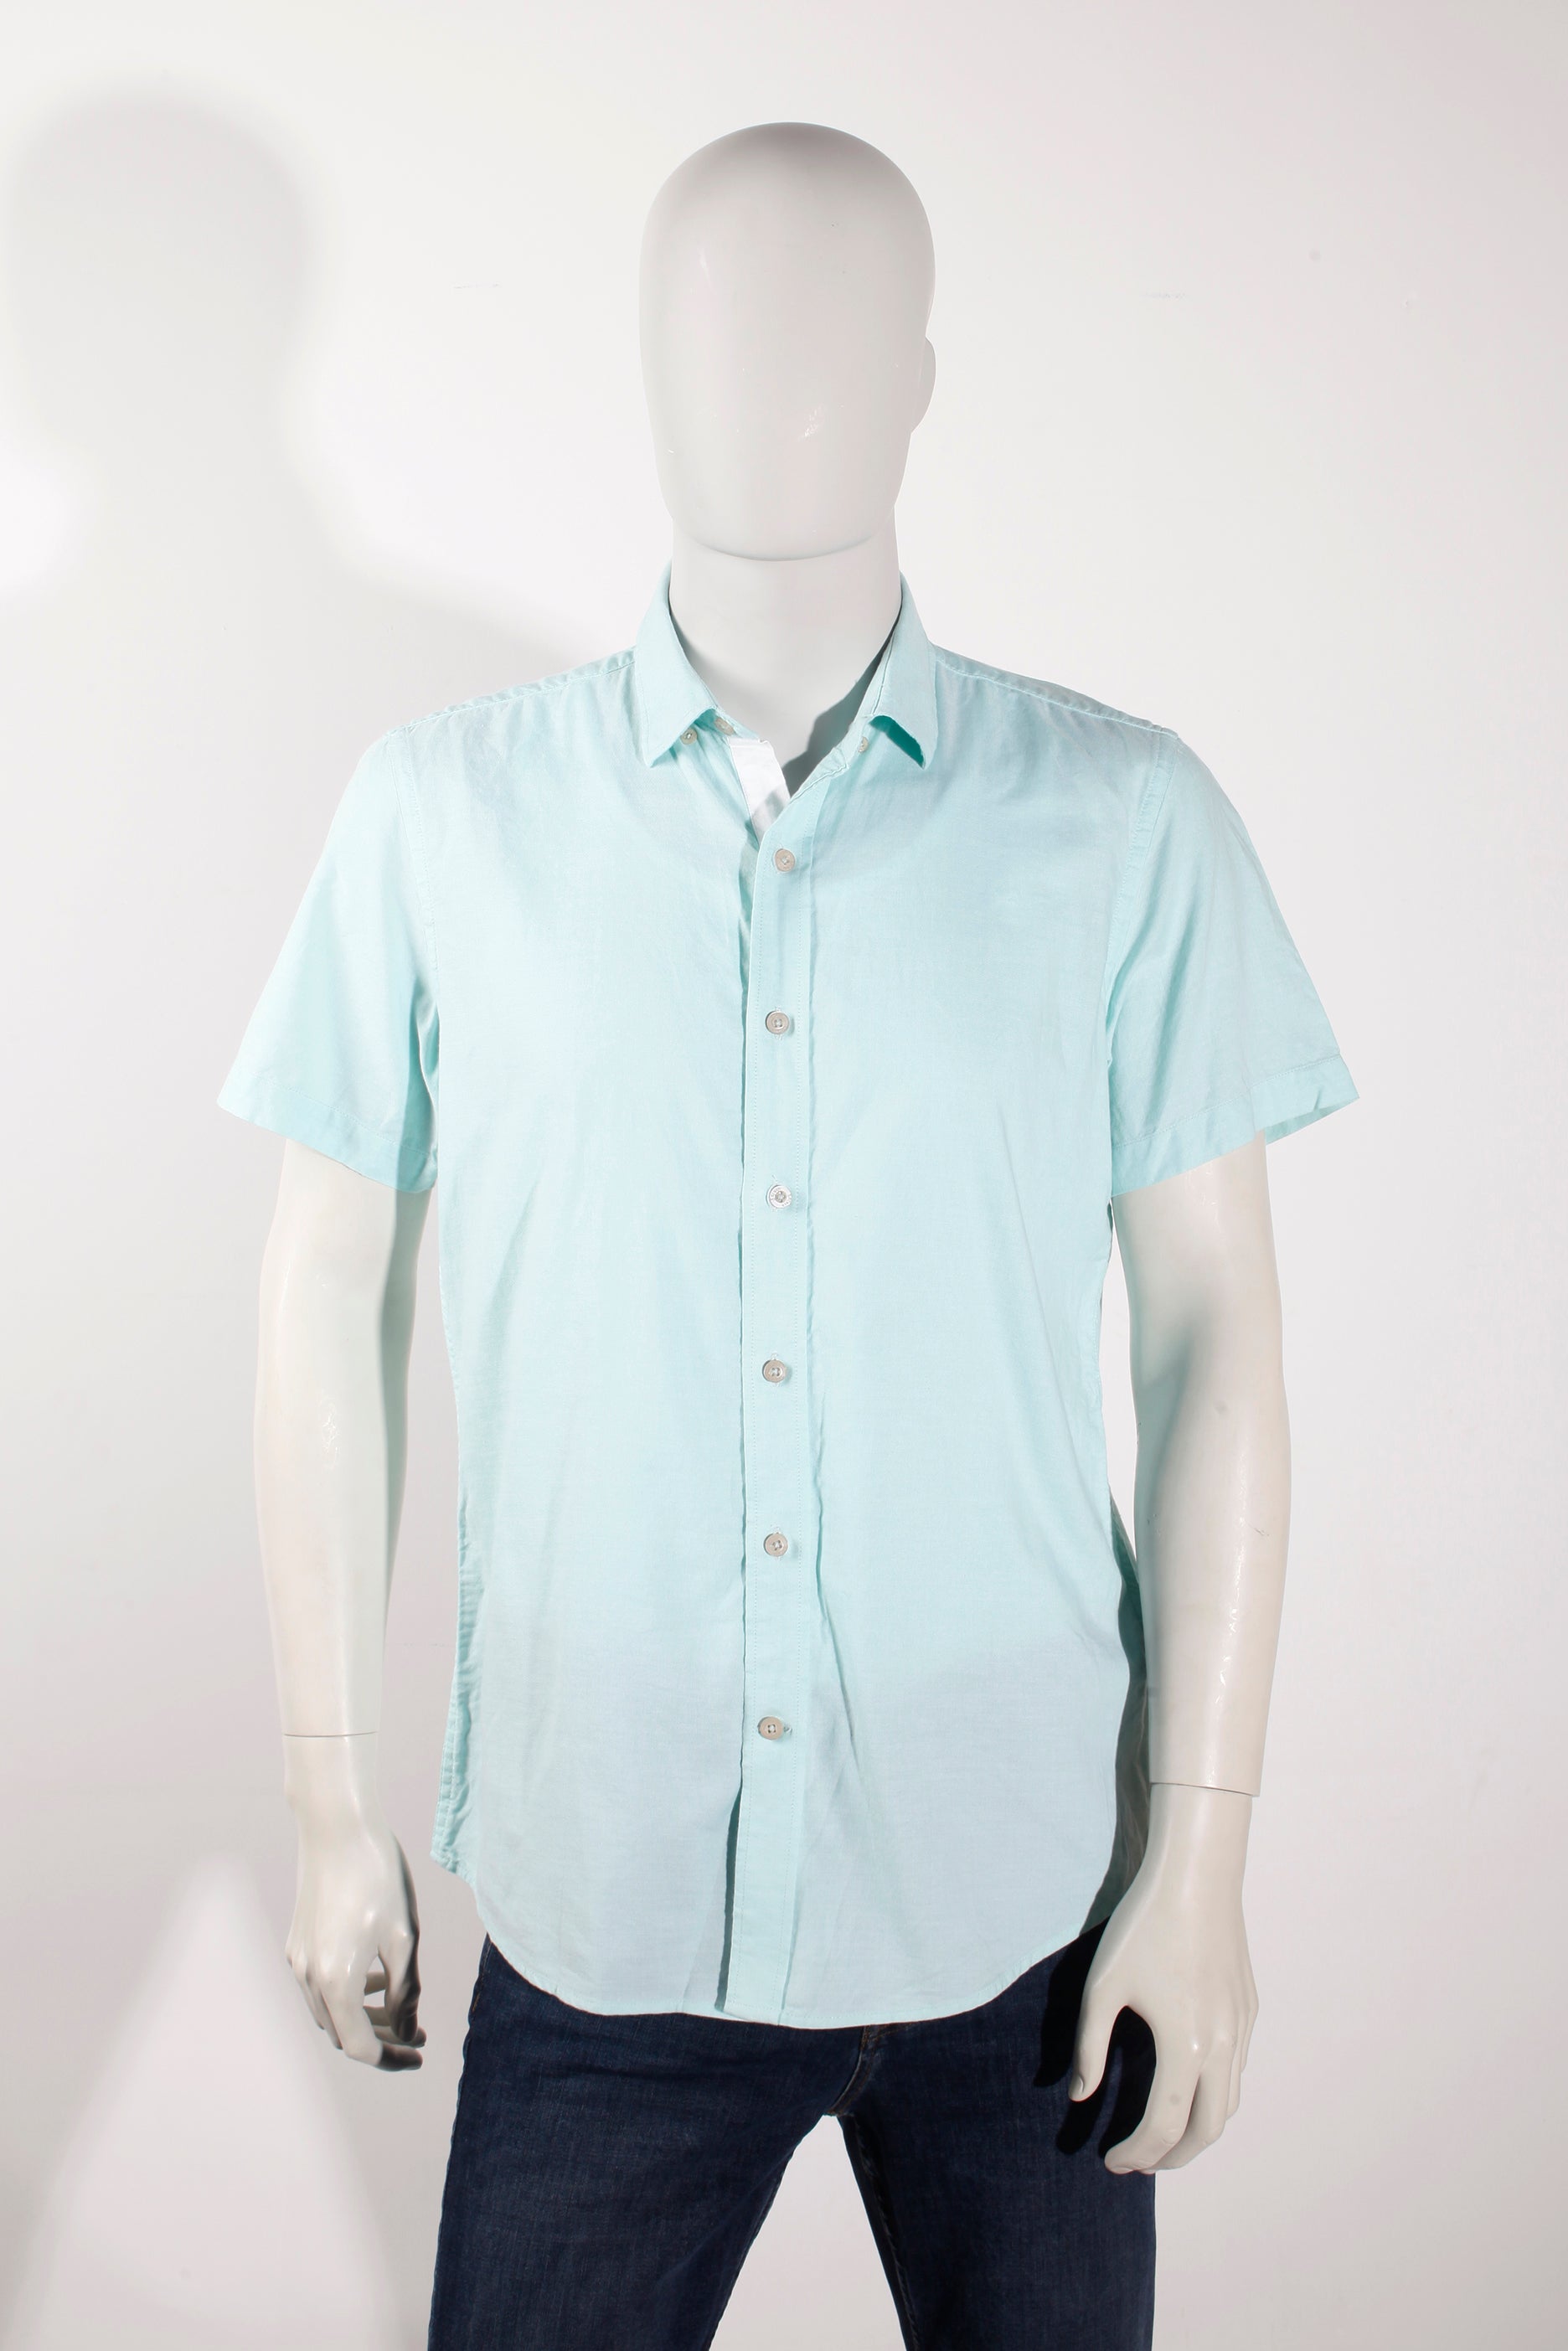 Men's Light Blue Short-Sleeved Shirt (Medium)